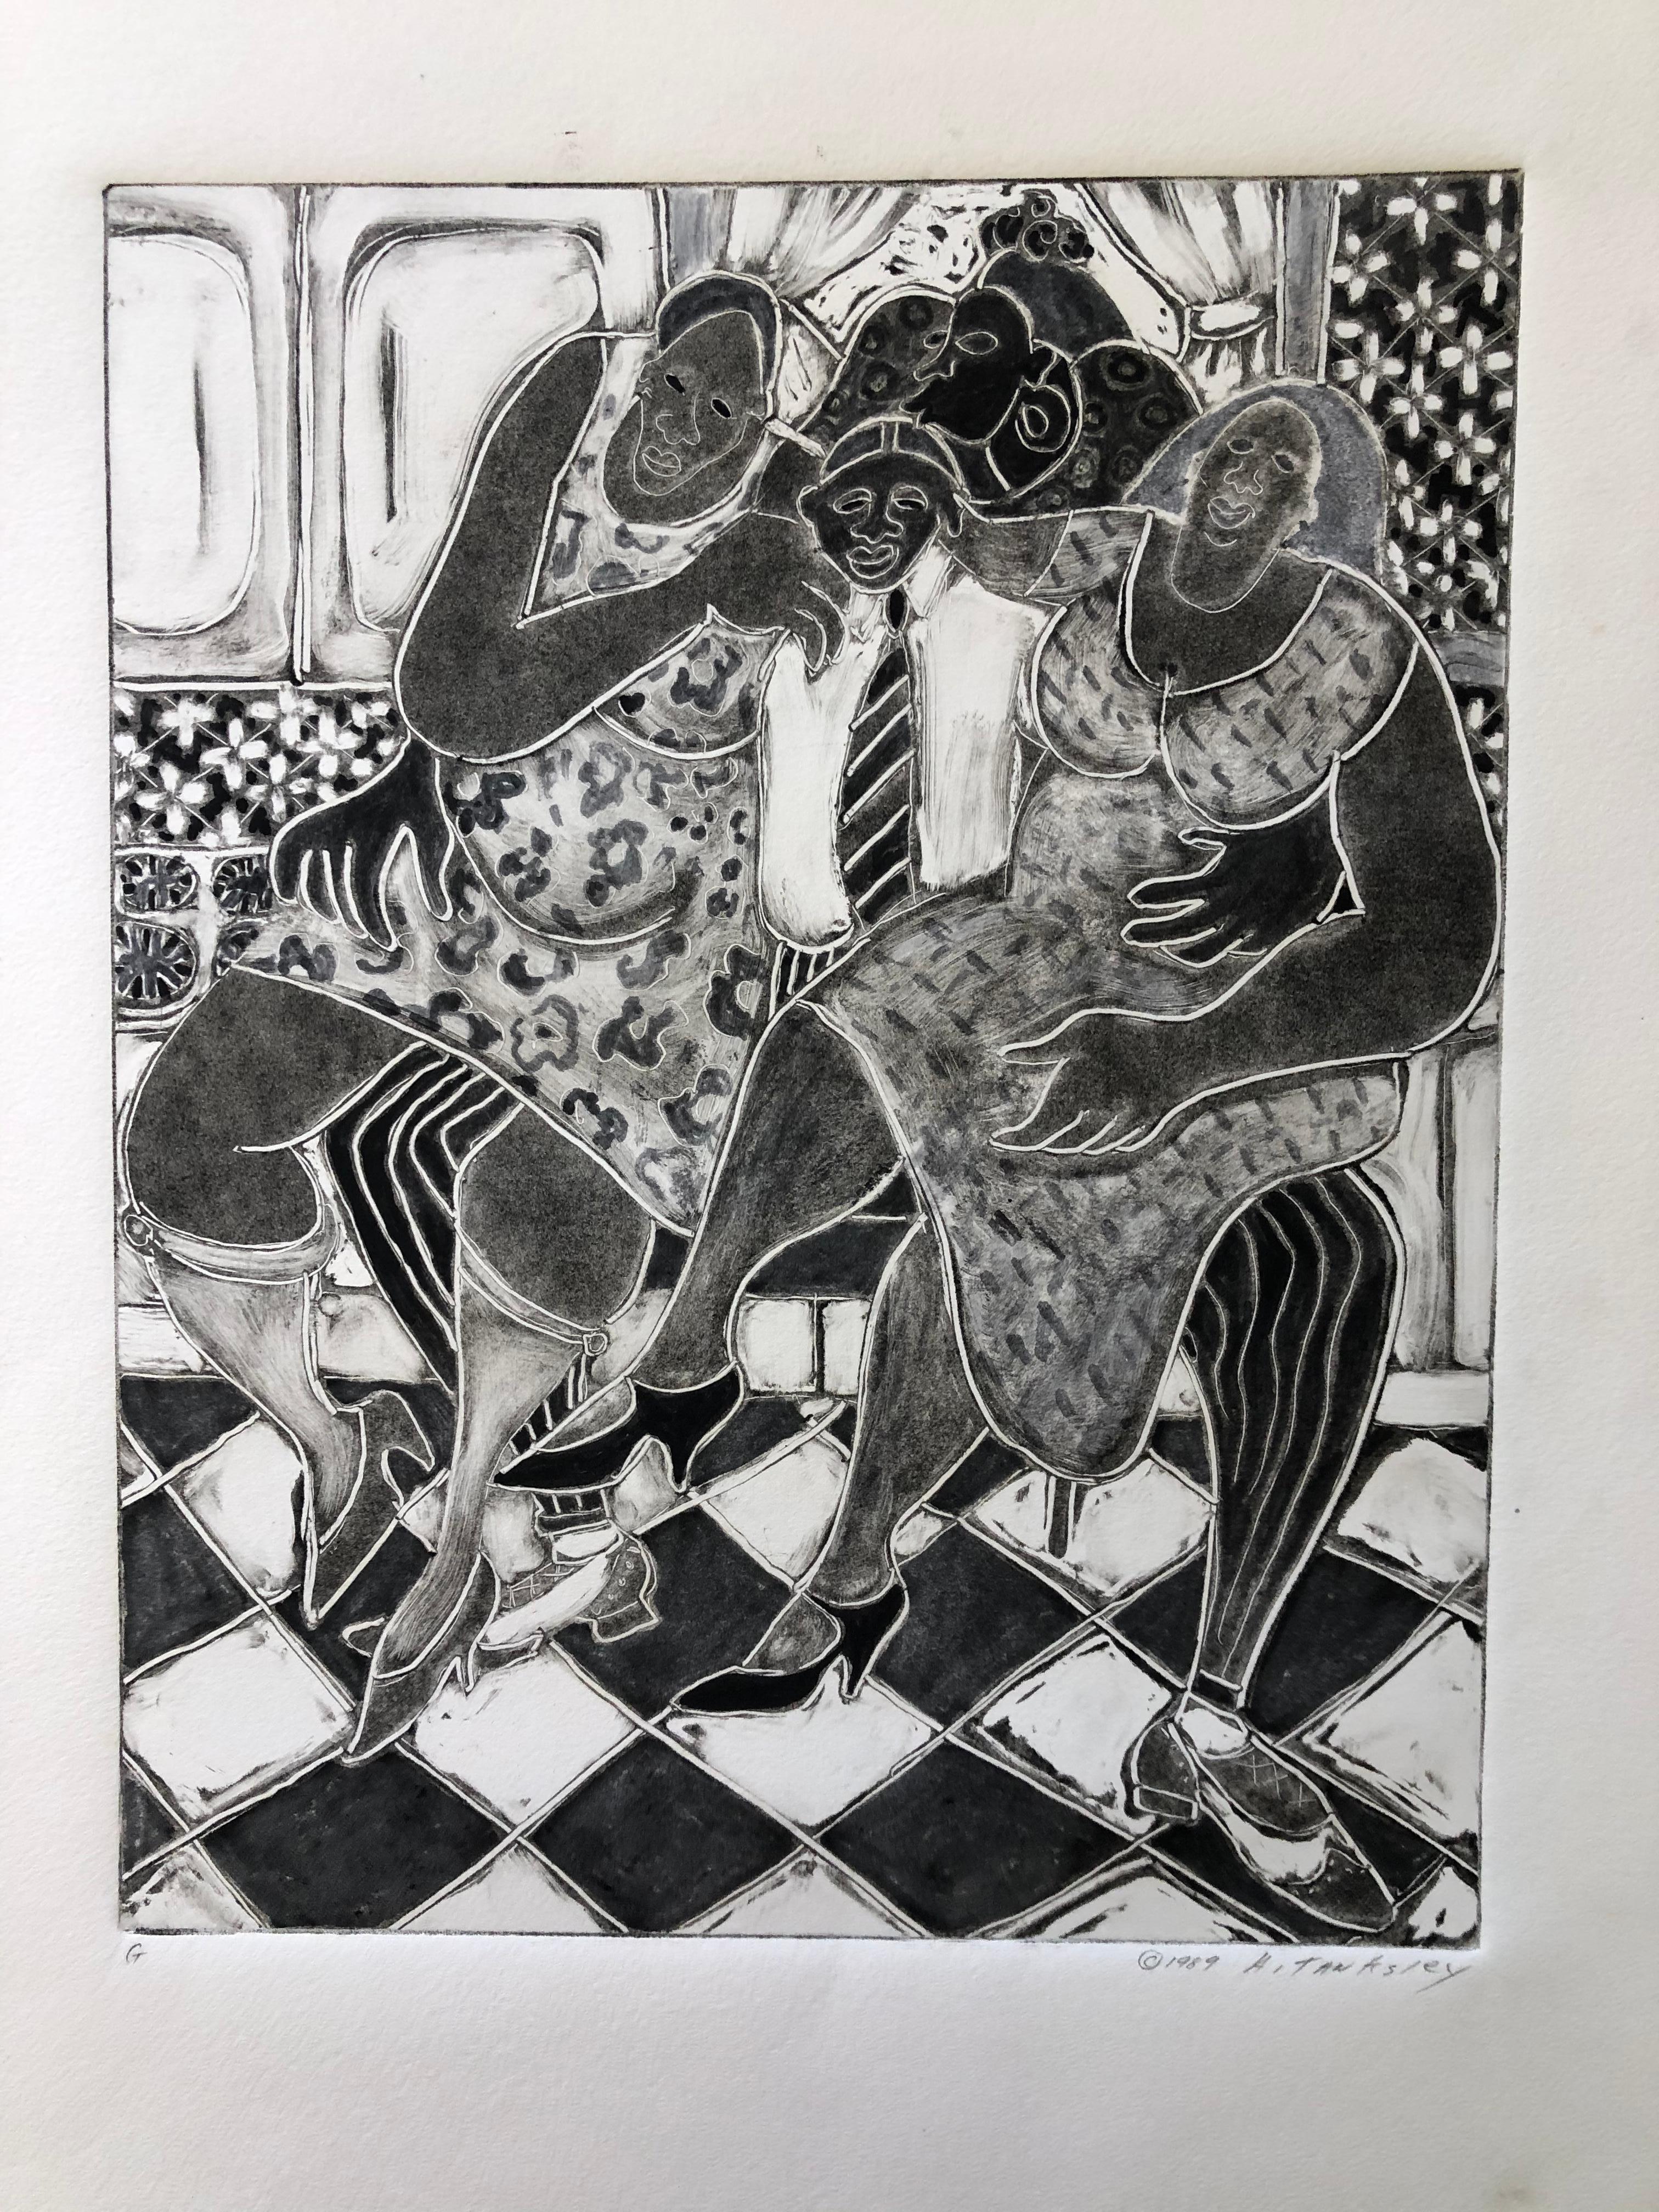 Ann Tanksley ist eine afroamerikanische Künstlerin, die 1934 geboren wurde. Sie studierte in Carnegie Mellon sowie an der Arts Students League und der New School for Social Research. Diese Monotypie-Radierung stammt aus ihrer wichtigsten Serie von